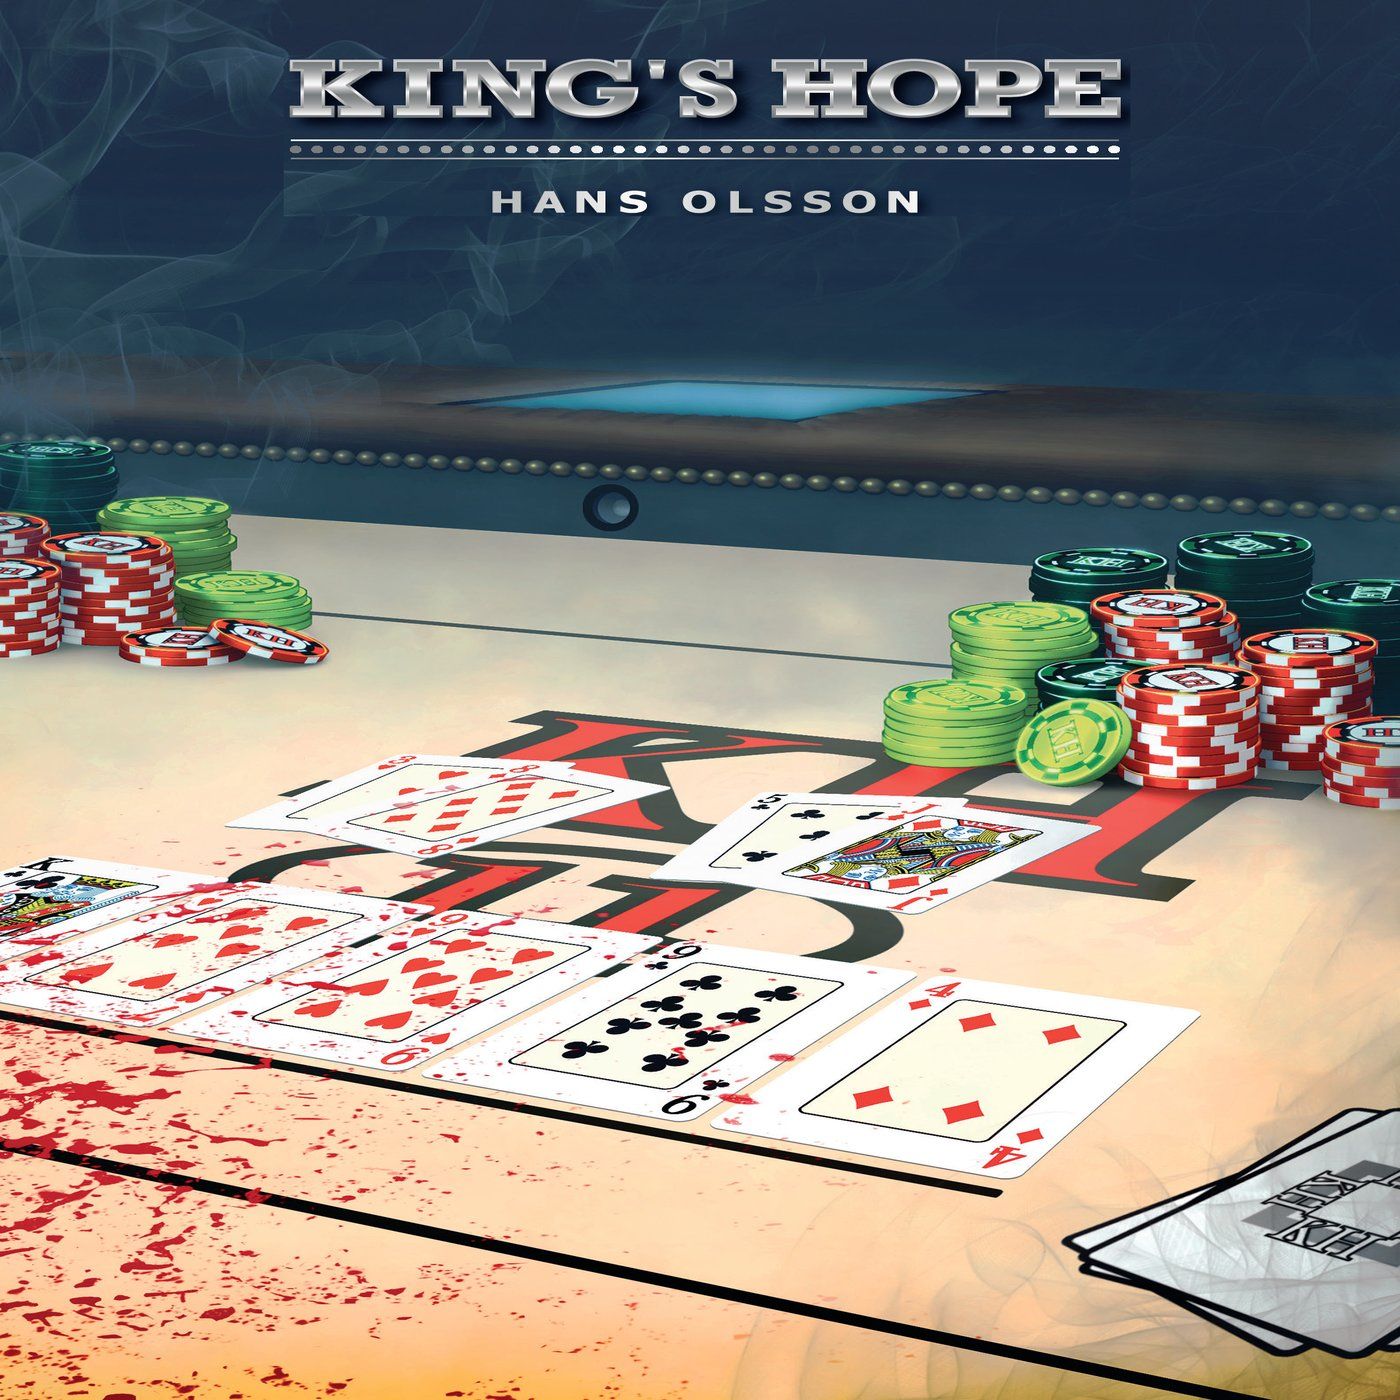 King's Hope, lydbog af Hans Olsson